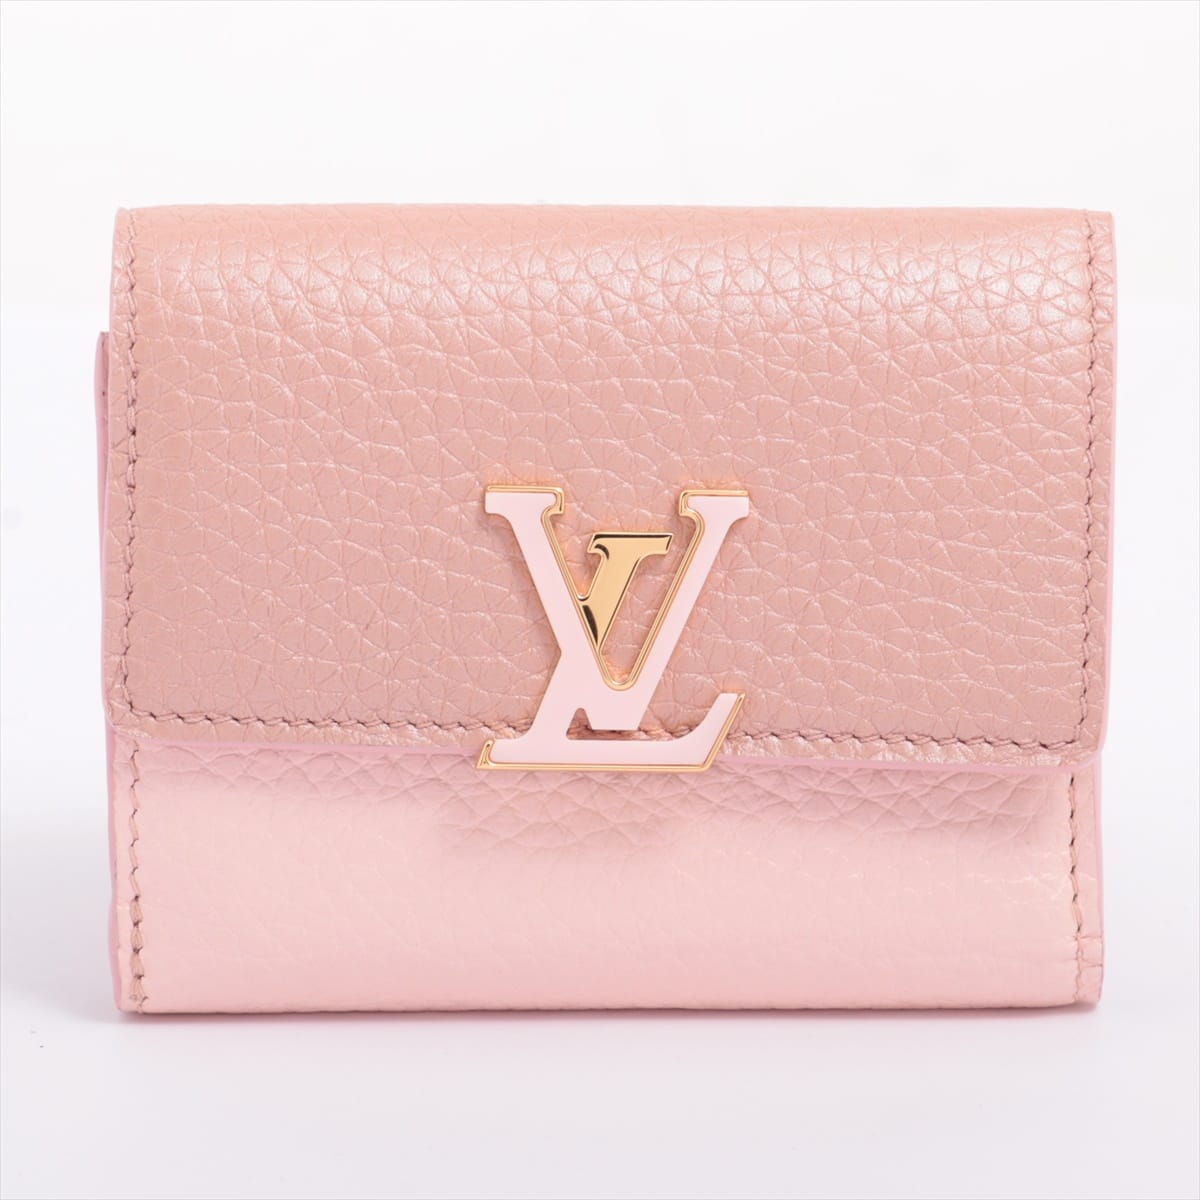 Louis Vuitton Taurillon Wallet Capucines XS M80986 rose metallic Japan limited color